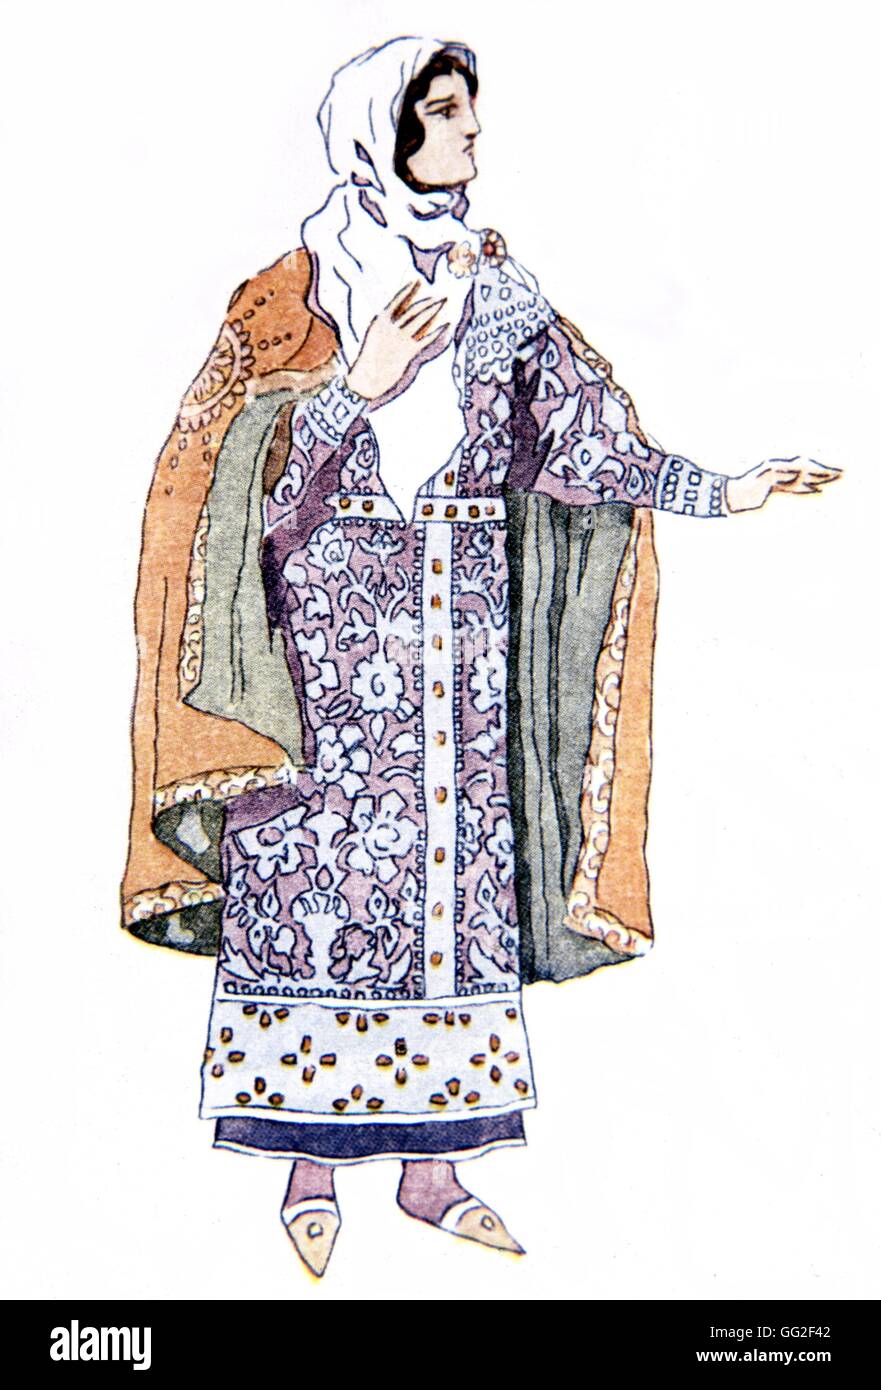 Le Prince Igor, opéra de Borodine (1833-1887). Aquarelle de Korovine : le costume de Jaroslavna ballets russes 1929 Collection privée Banque D'Images